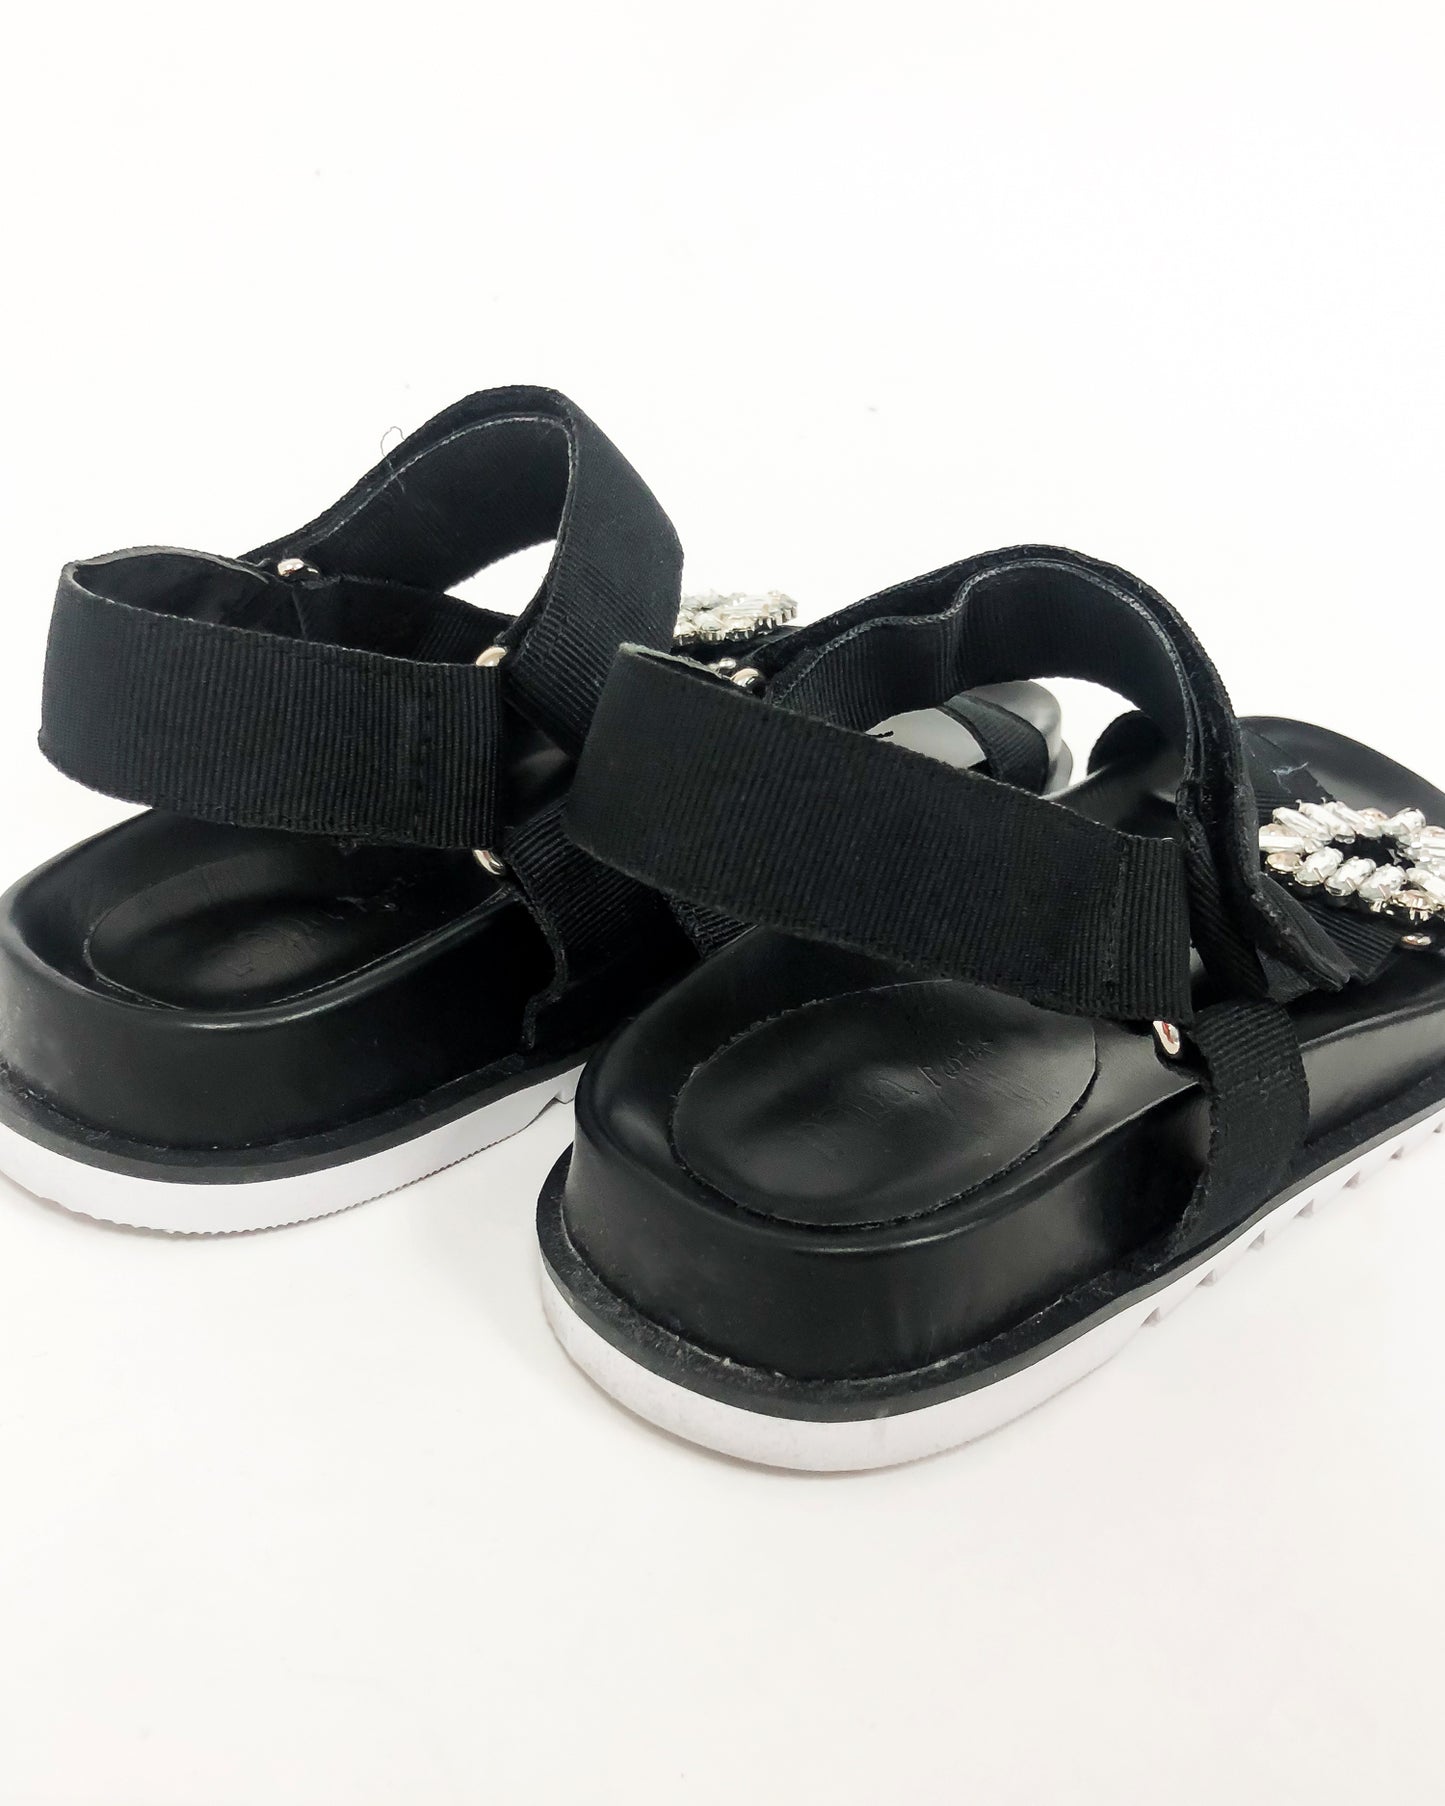 black strappy diamond sandals *pre-order*